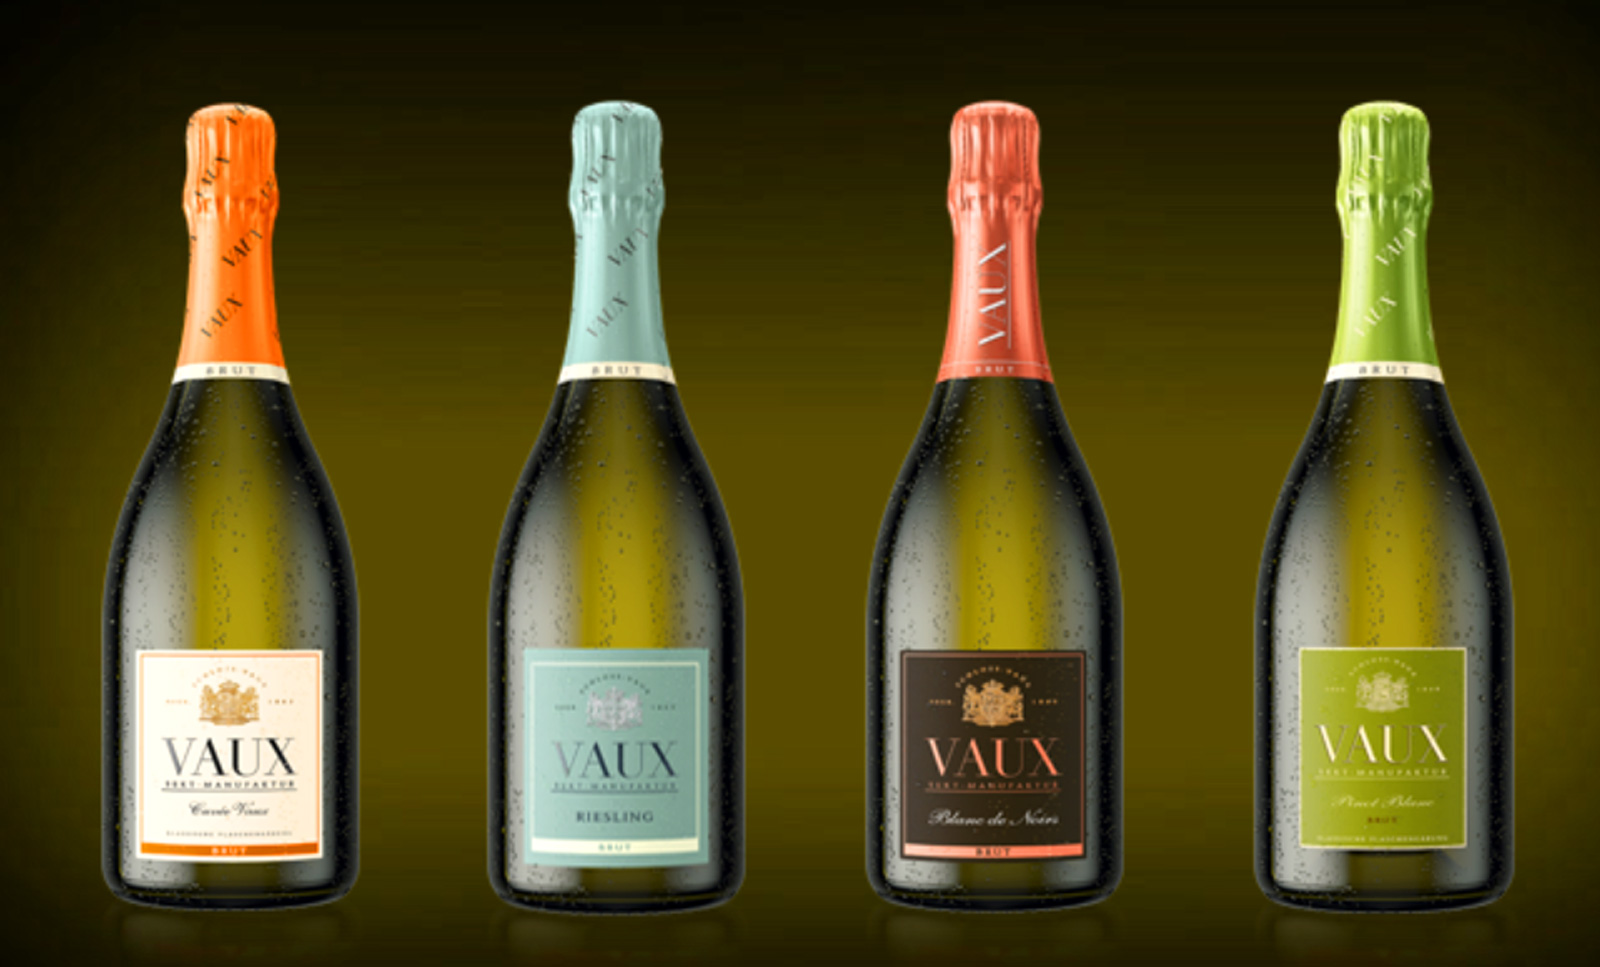 CHAMPAGNEKASTEEL VAUX Alle mousserende wijnen van VAUX worden geproduceerd volgens de traditionele methode van klassieke gisting op fles en zijn brut gedoseerd.